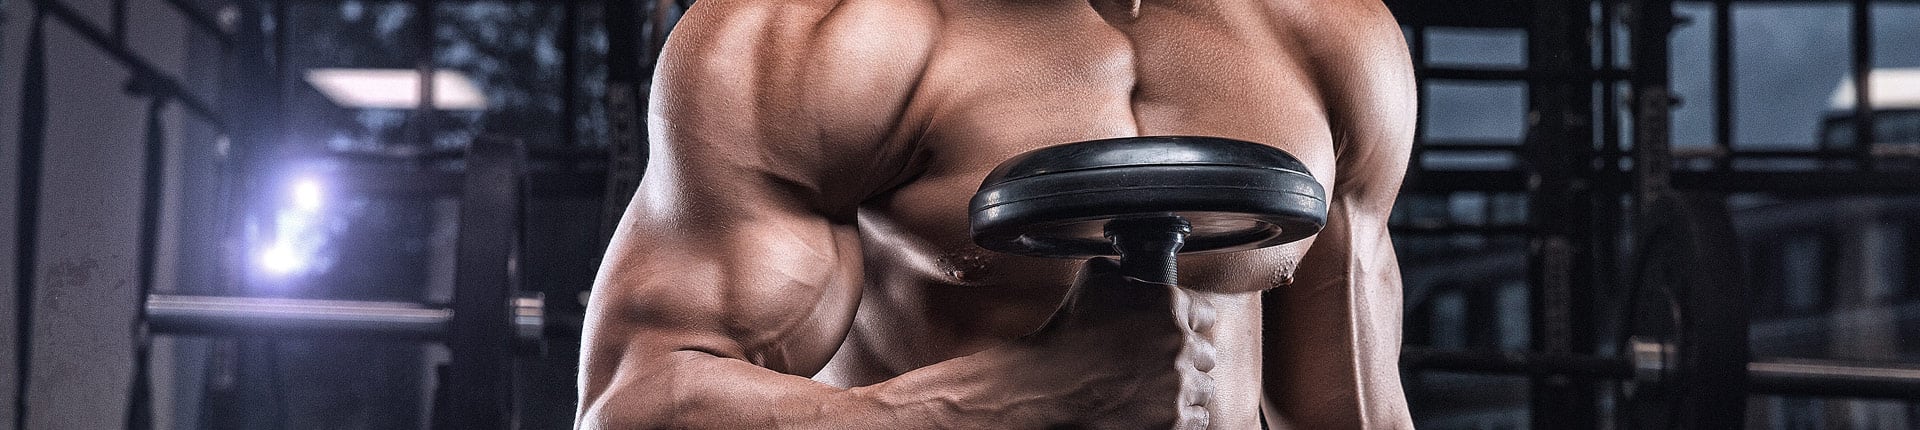 10 najskuteczniejszych ćwiczeń na bicepsy